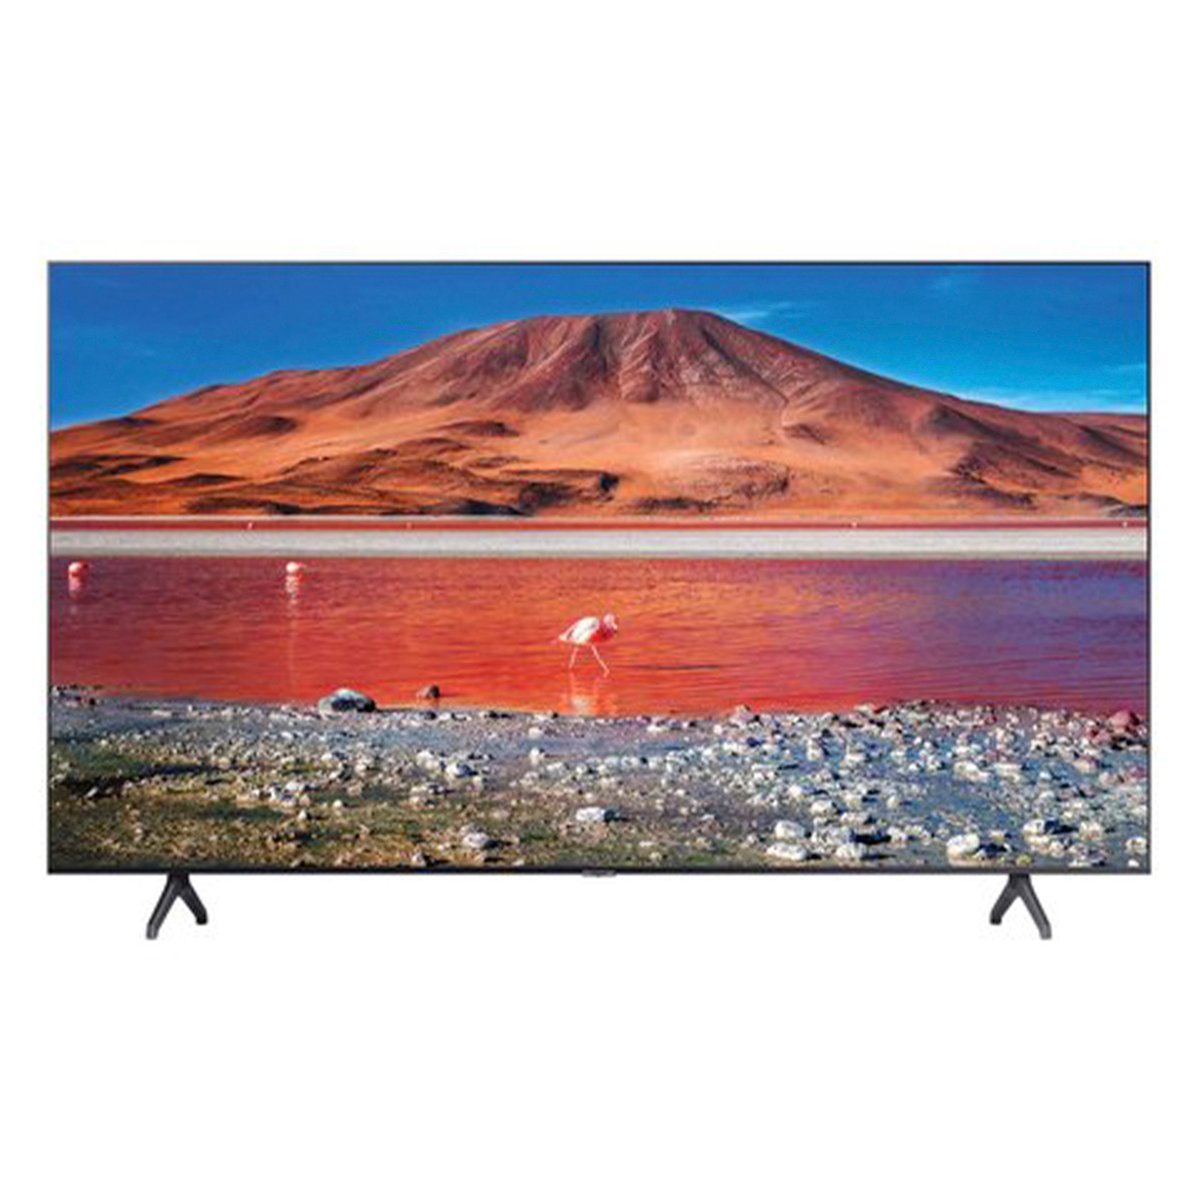 Samsung UHD 4K Flat Smart TV UA55TU7000UXQR 55" (2020)